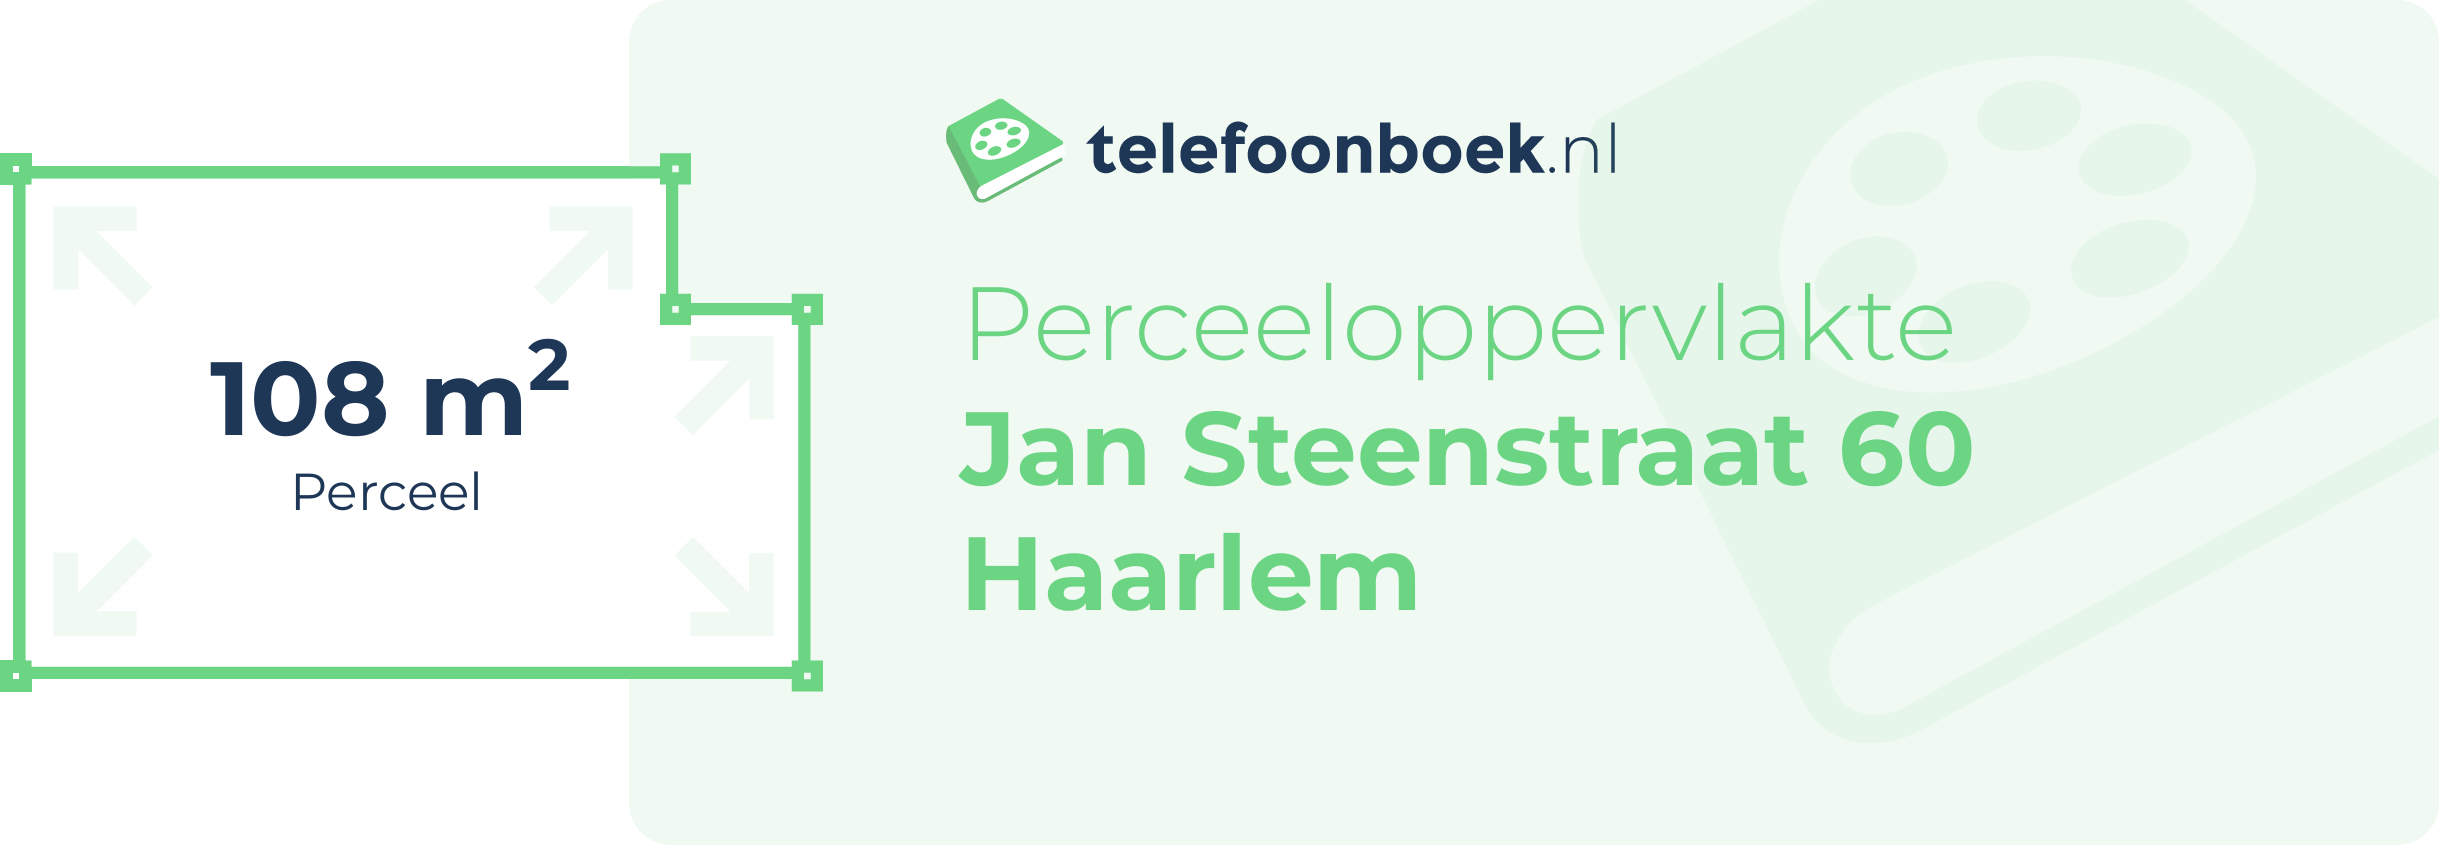 Perceeloppervlakte Jan Steenstraat 60 Haarlem